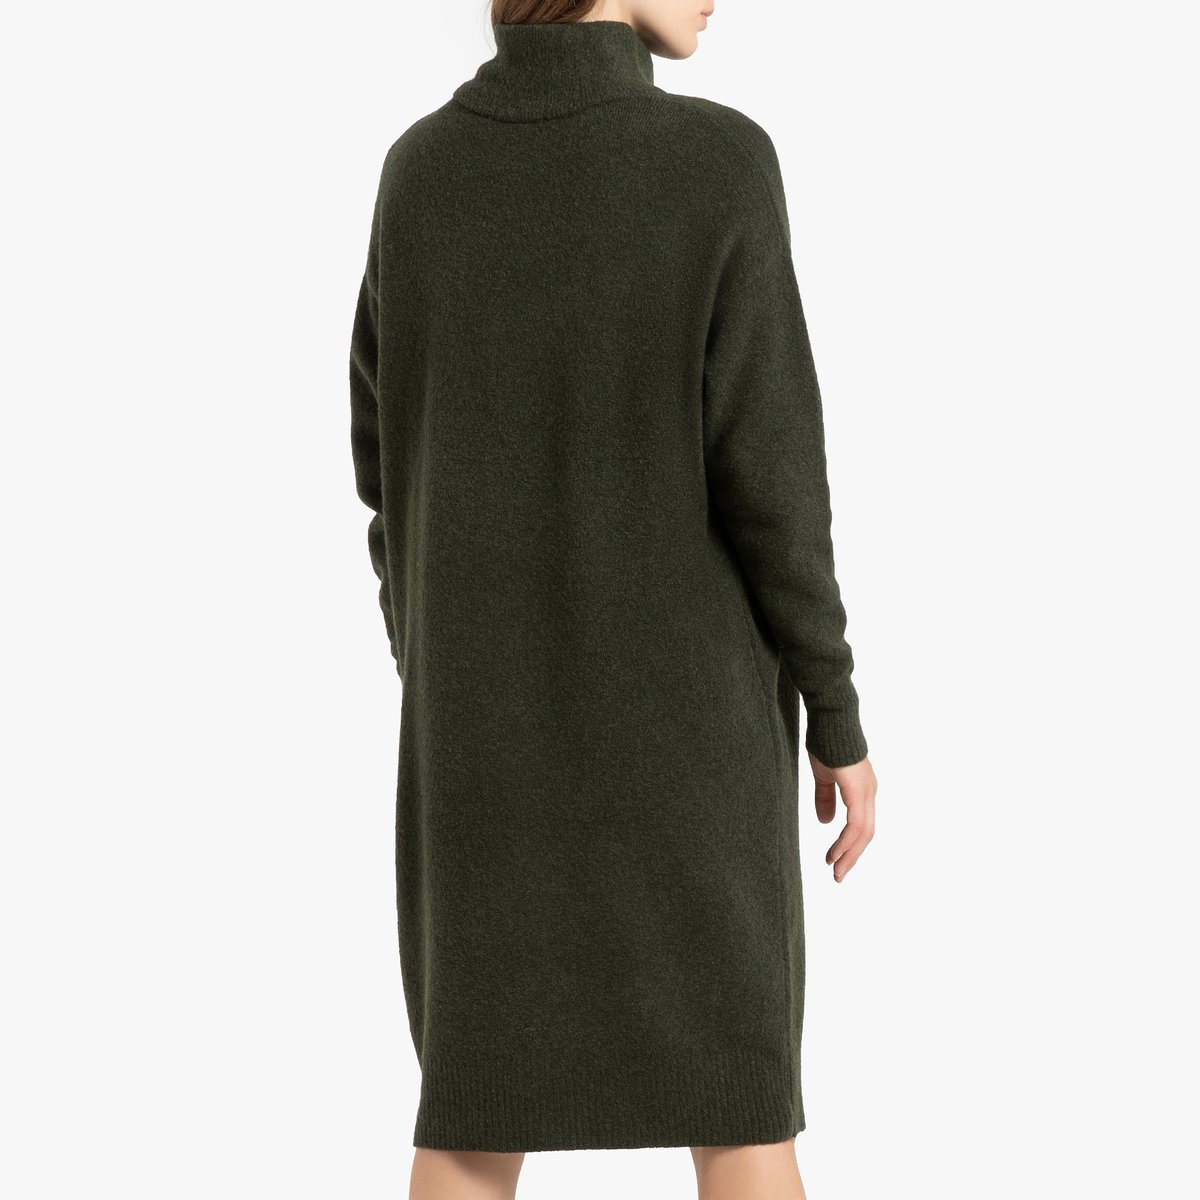 Платье-пуловер La Redoute Длинное с длинными рукавами DAMSVILLE XS/S зеленый, размер XS/S Длинное с длинными рукавами DAMSVILLE XS/S зеленый - фото 3